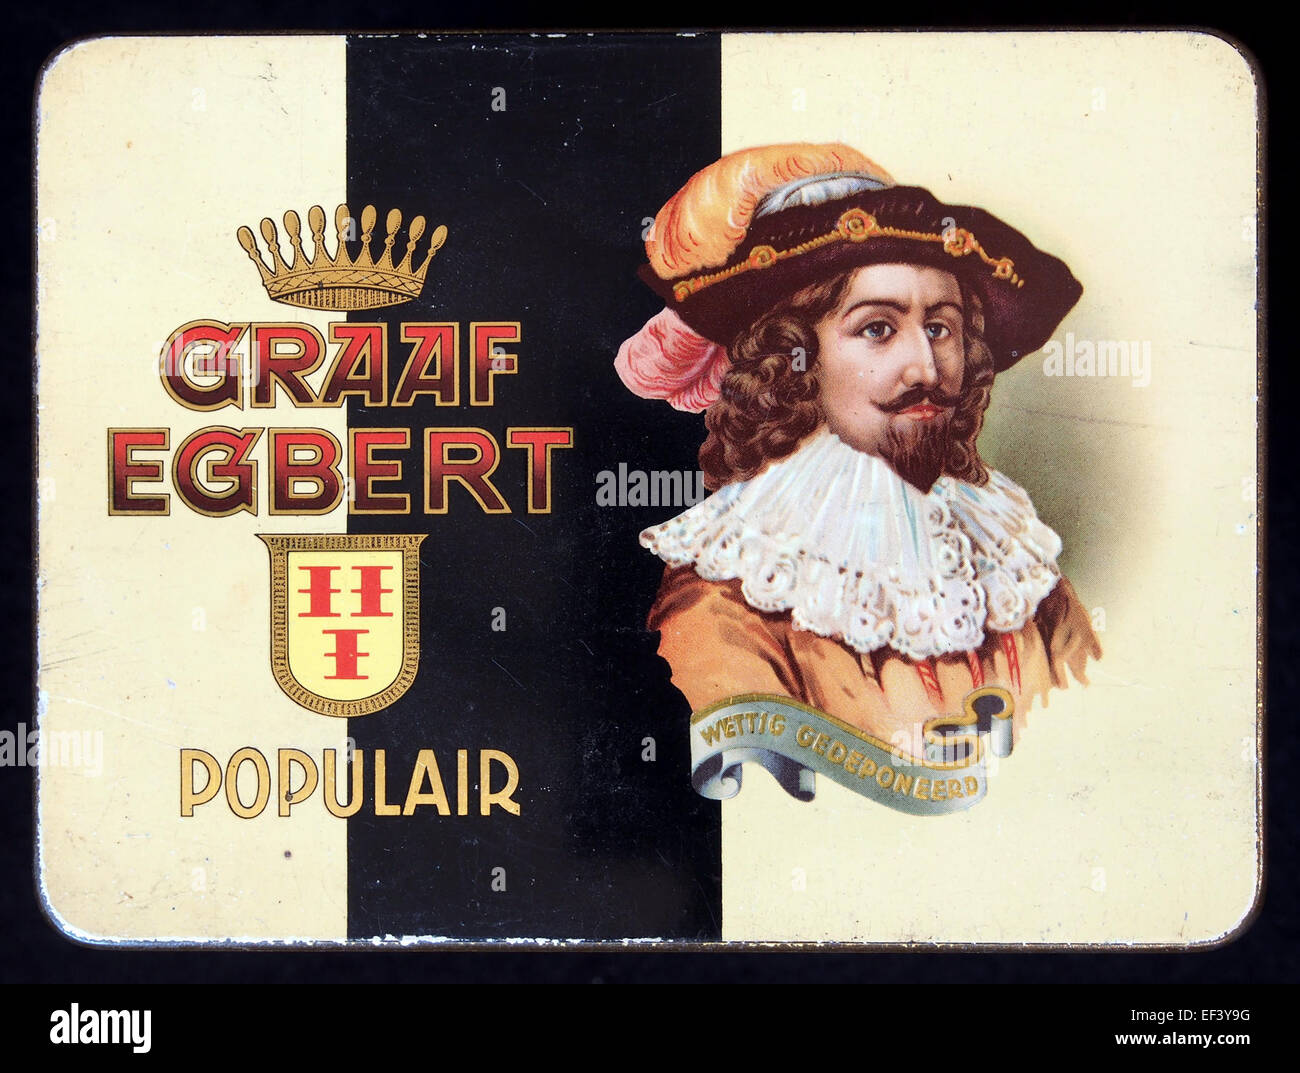 Graaf Egbert Populair sigarenblikje Stock Photo